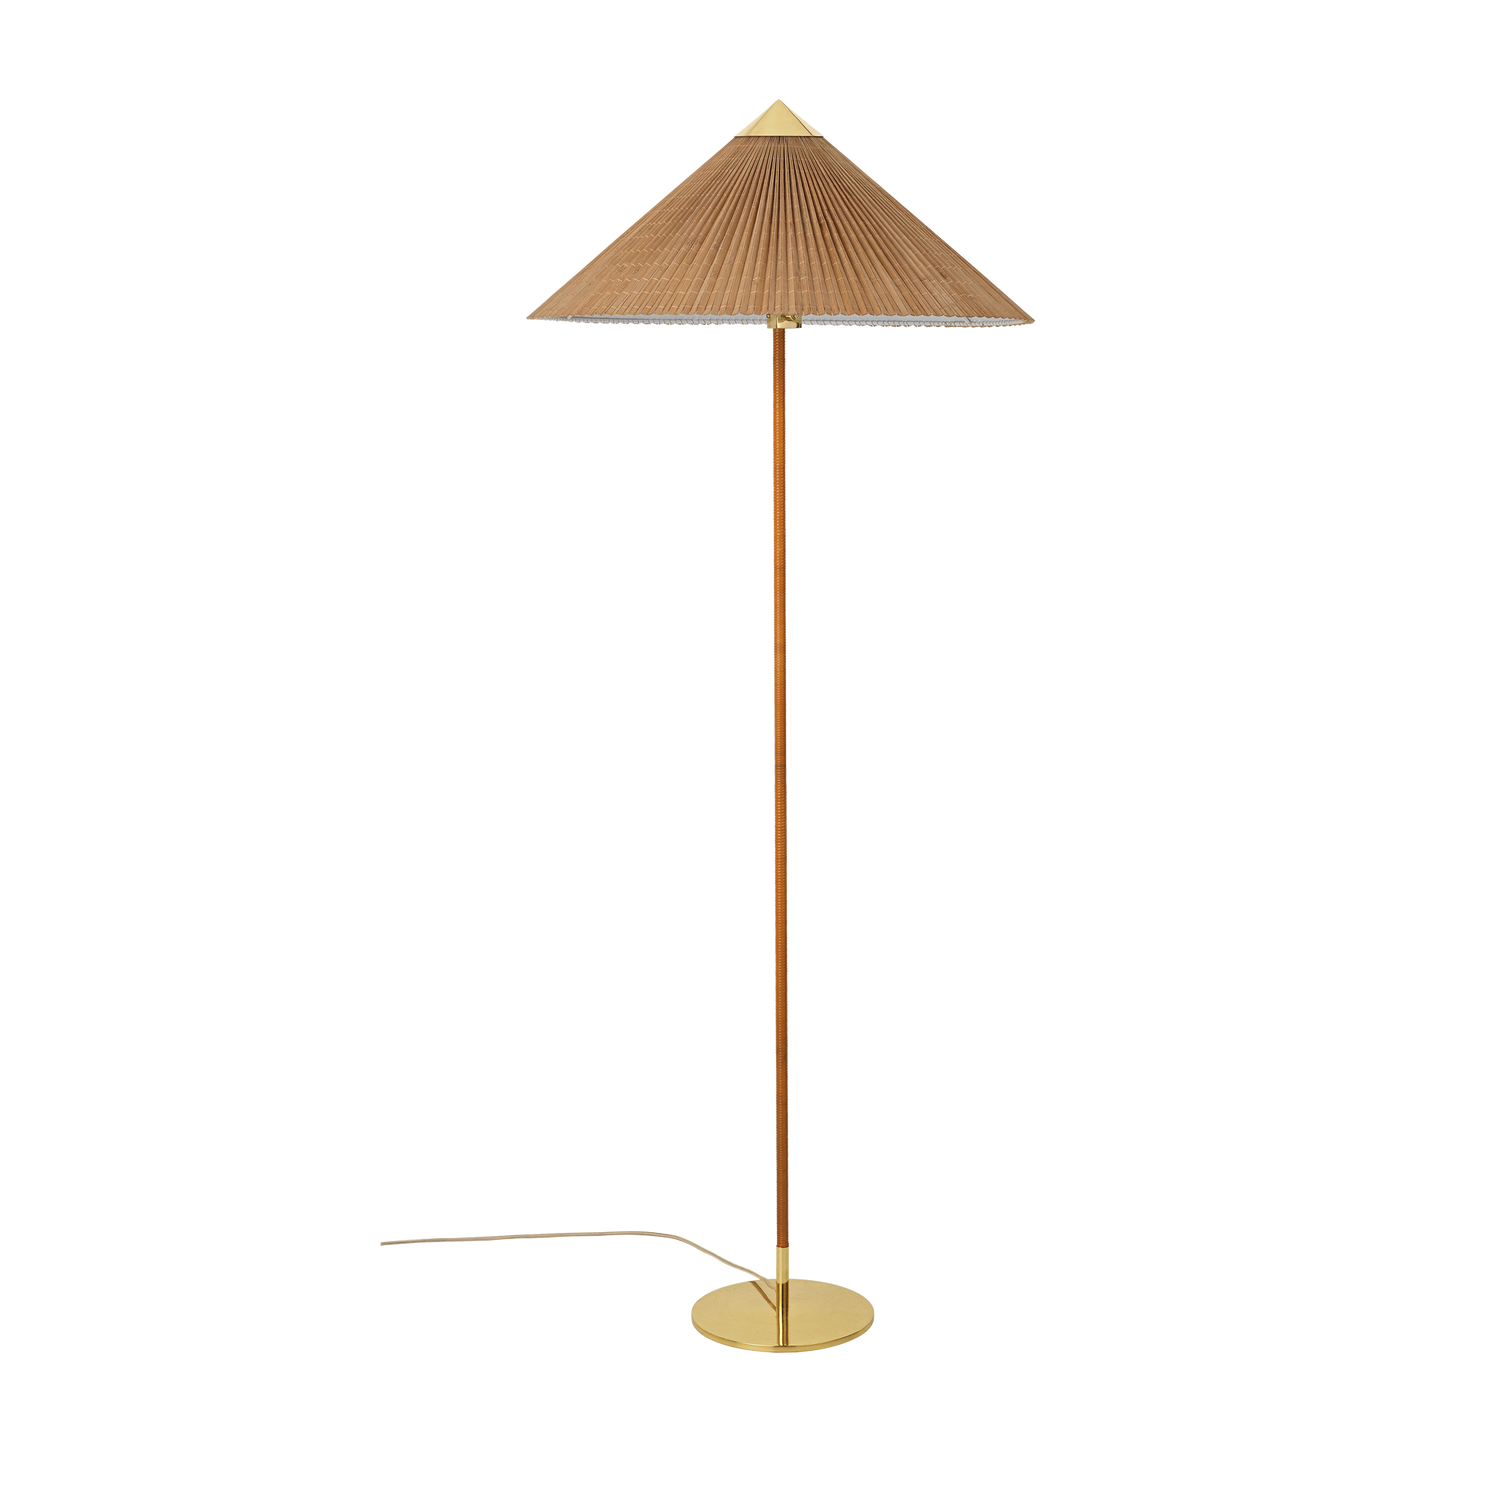 Gulvlampen 9602 ble opprinnelig designet av Paavo Tynell i 1938, men er nå relansert av Gubi. Tynells lamper kjennetegnes gjerne av vakre detaljer og sirlig håndverk. Denne varianten har som de andre lampefot i polert messing og spunnet rotting, men her er skjermen laget av håndsydde bambuslameller.